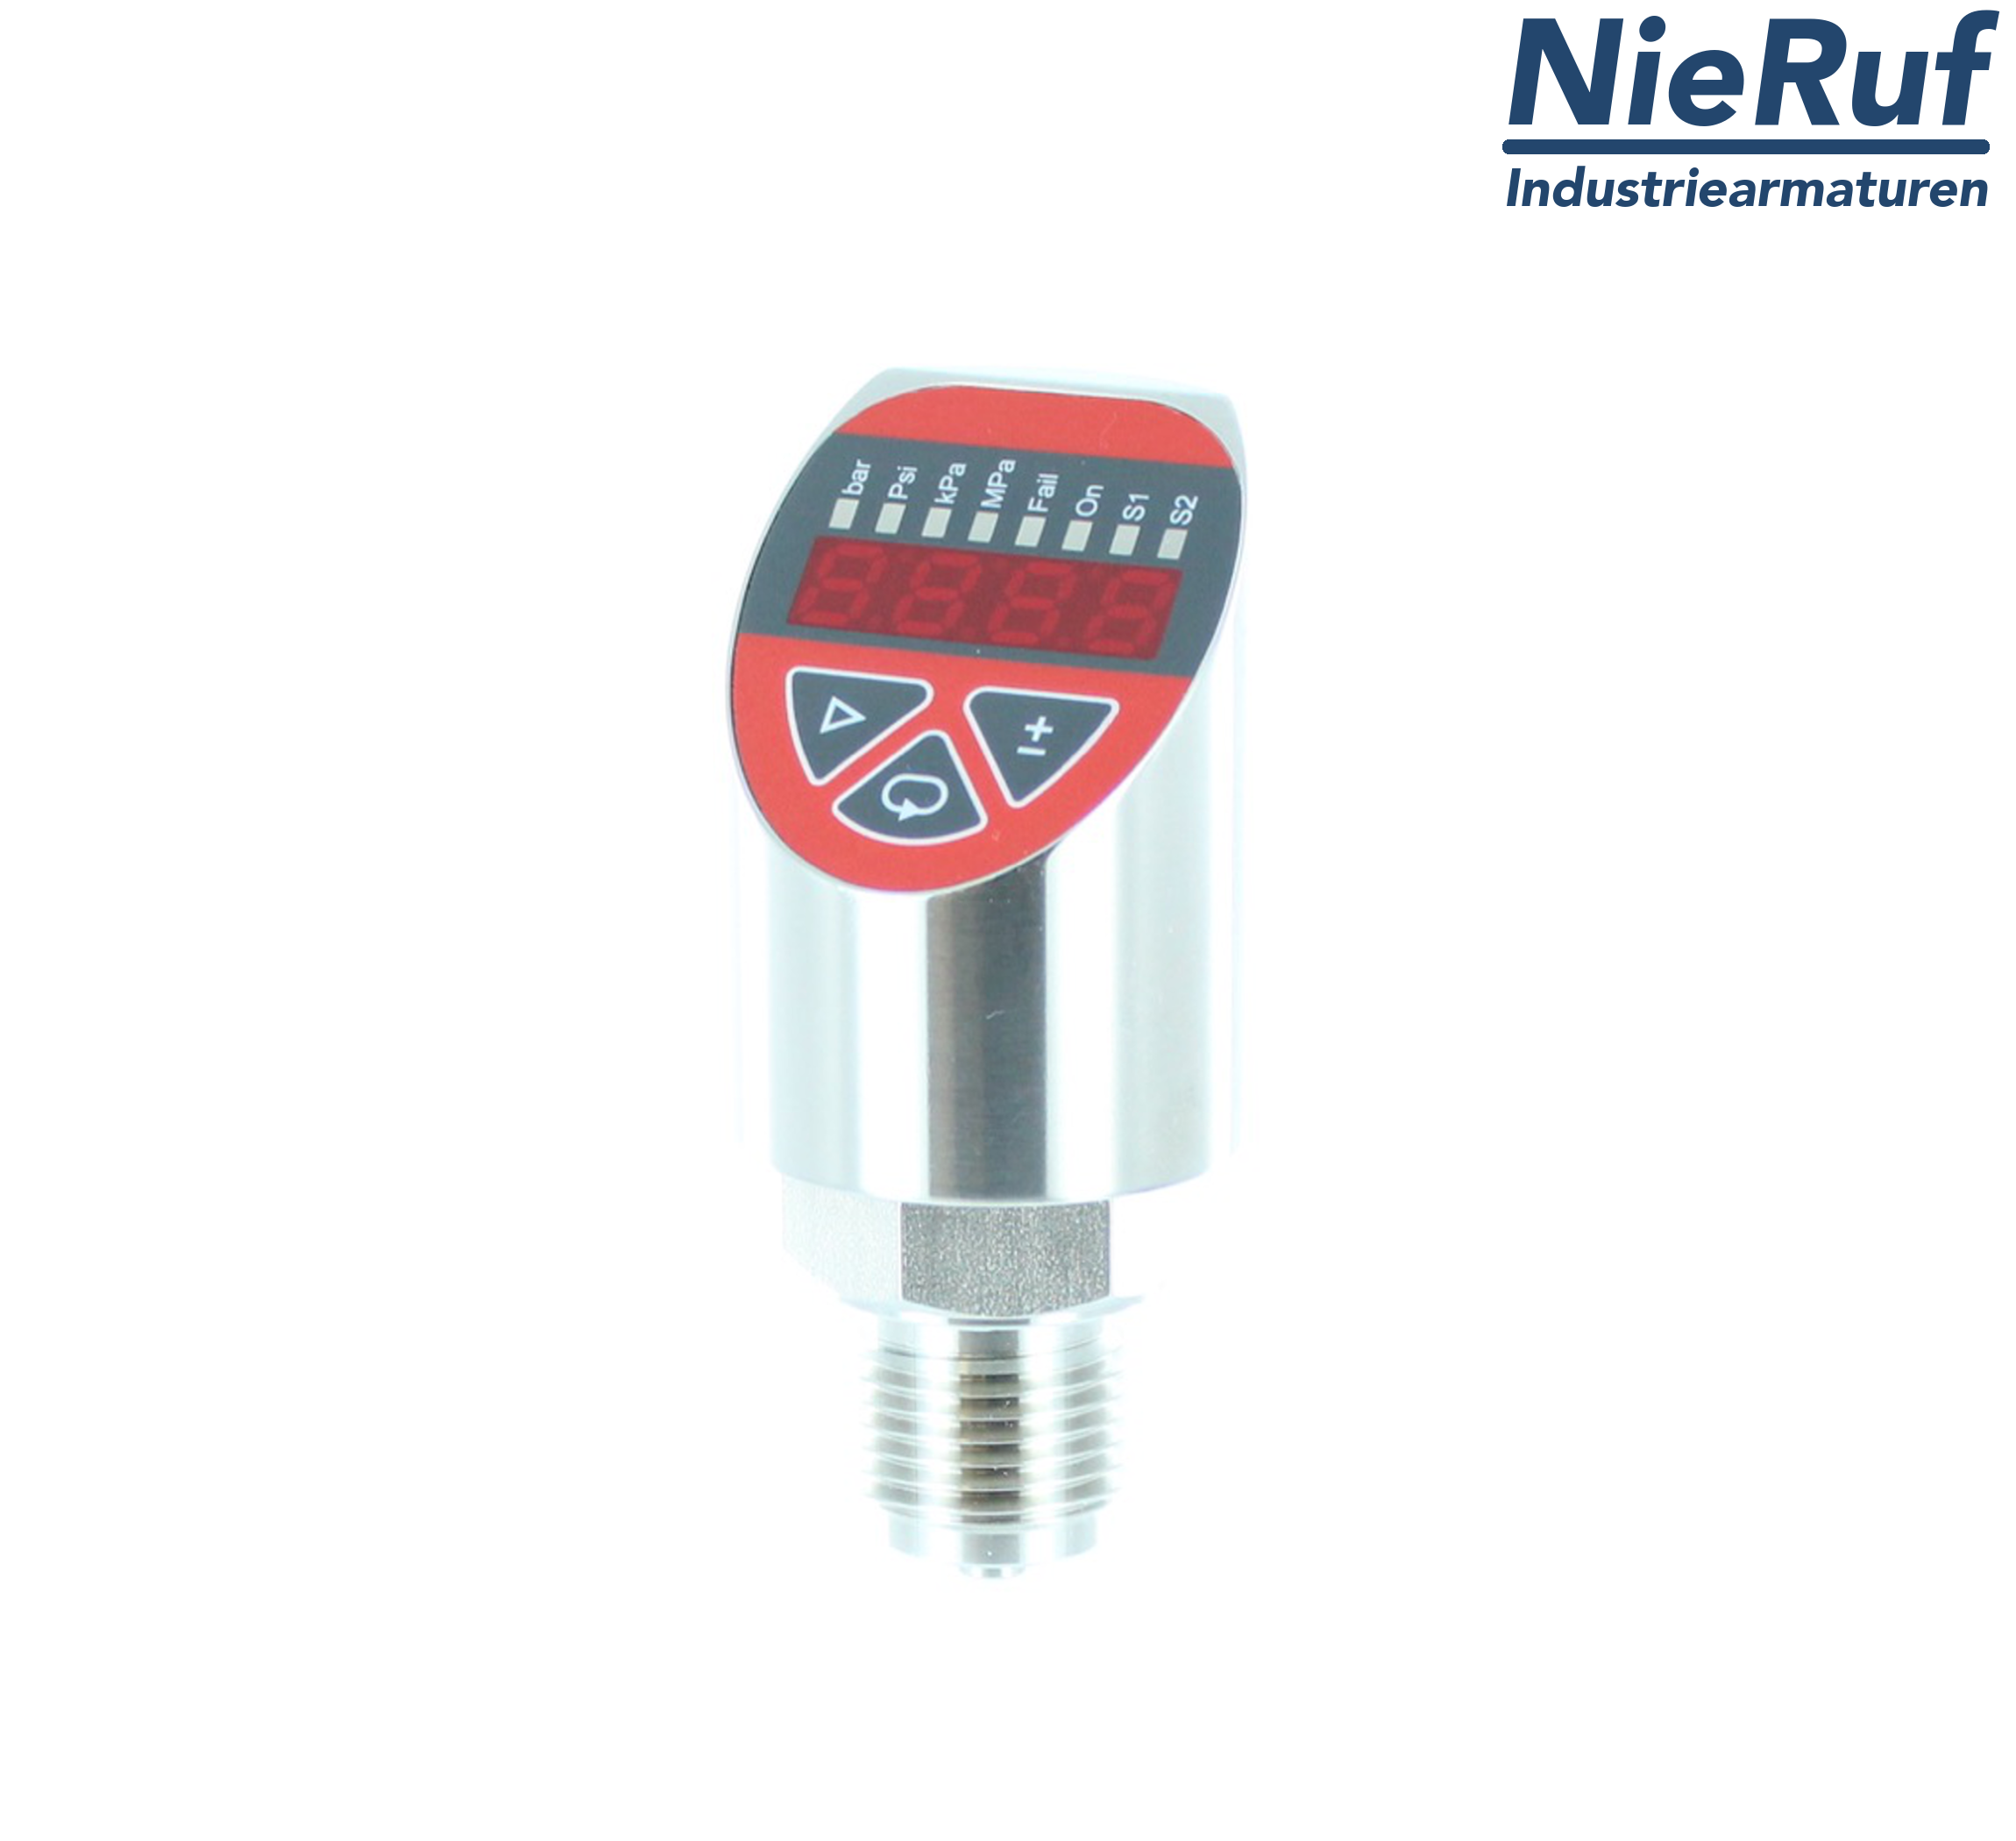 digital pressure sensor G 1/2" B IB 4-wire: 1xPNP, 1x4 - 20mA, Desina FPM 0,0 - 2,5 bar